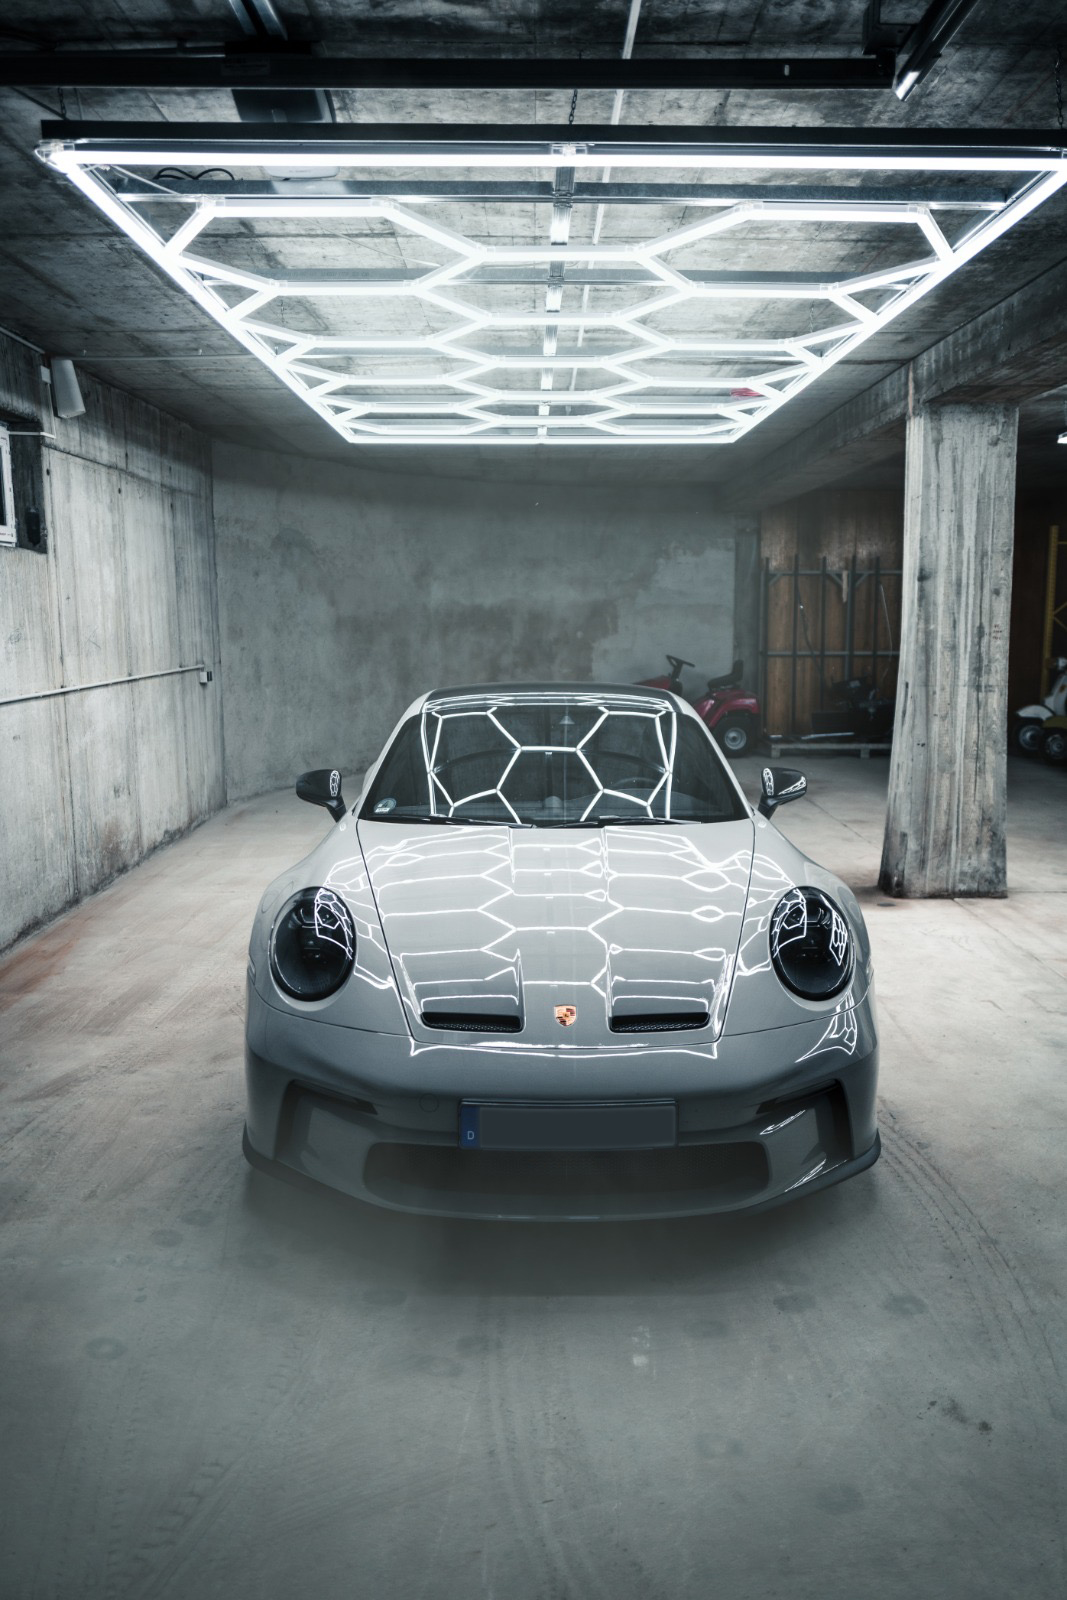 Fotografierter Porsche in München in einer Garage